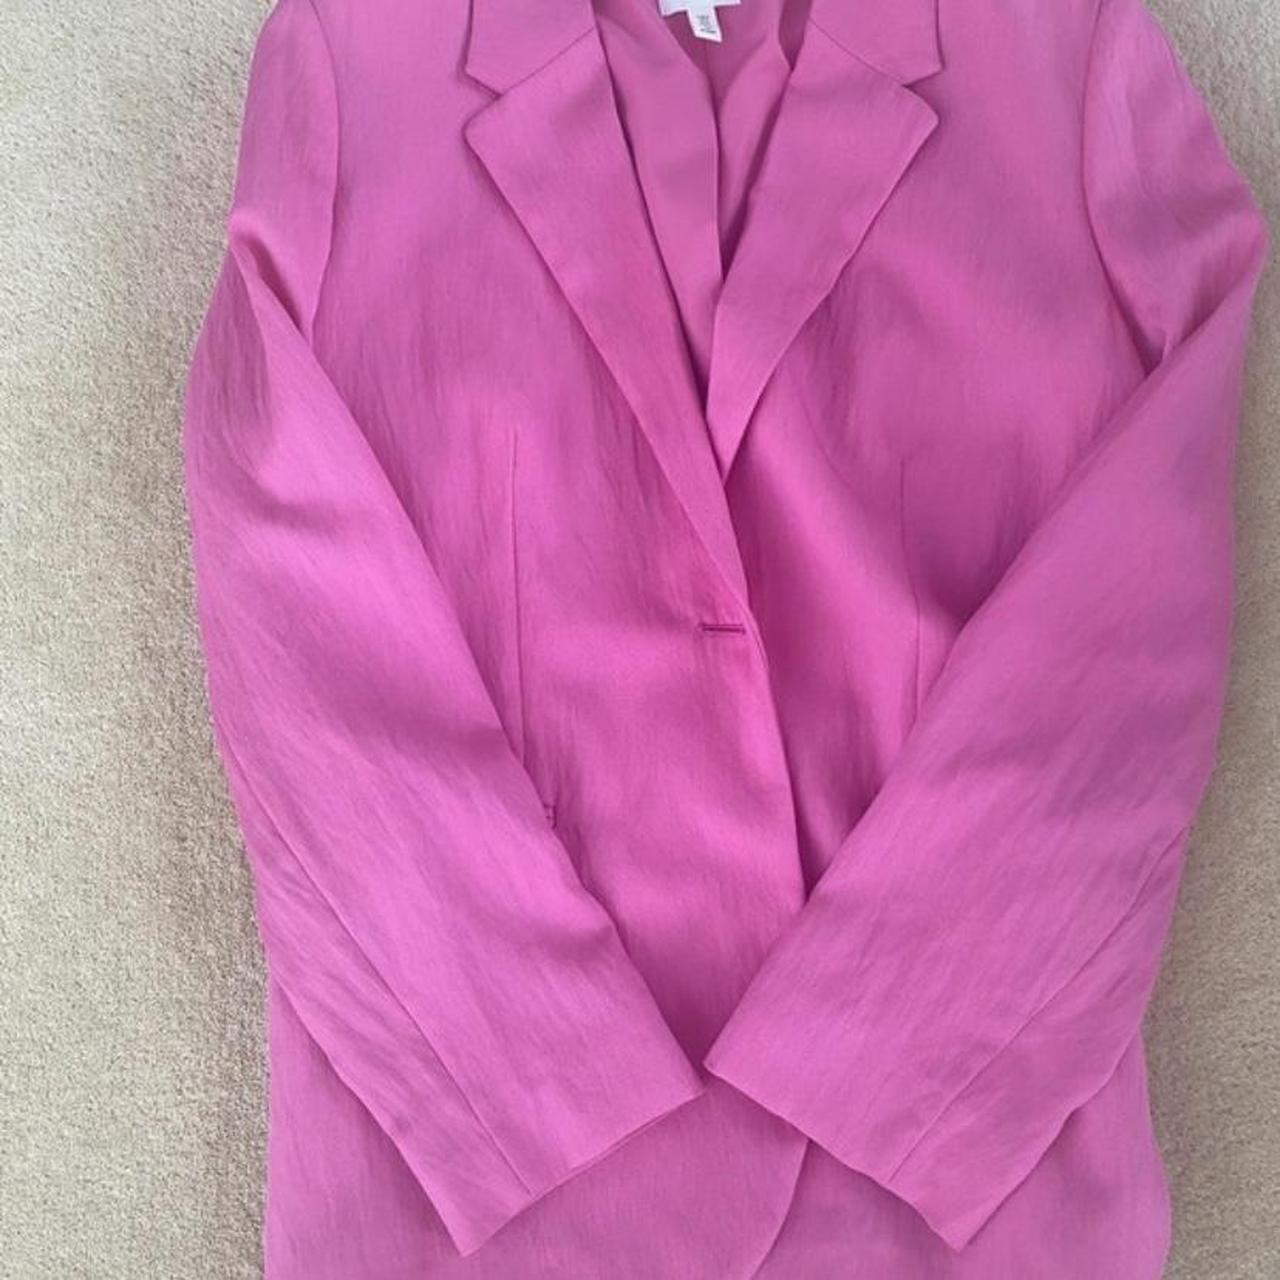 Suit blazer Size S Suit jacket Barbie color... - Depop